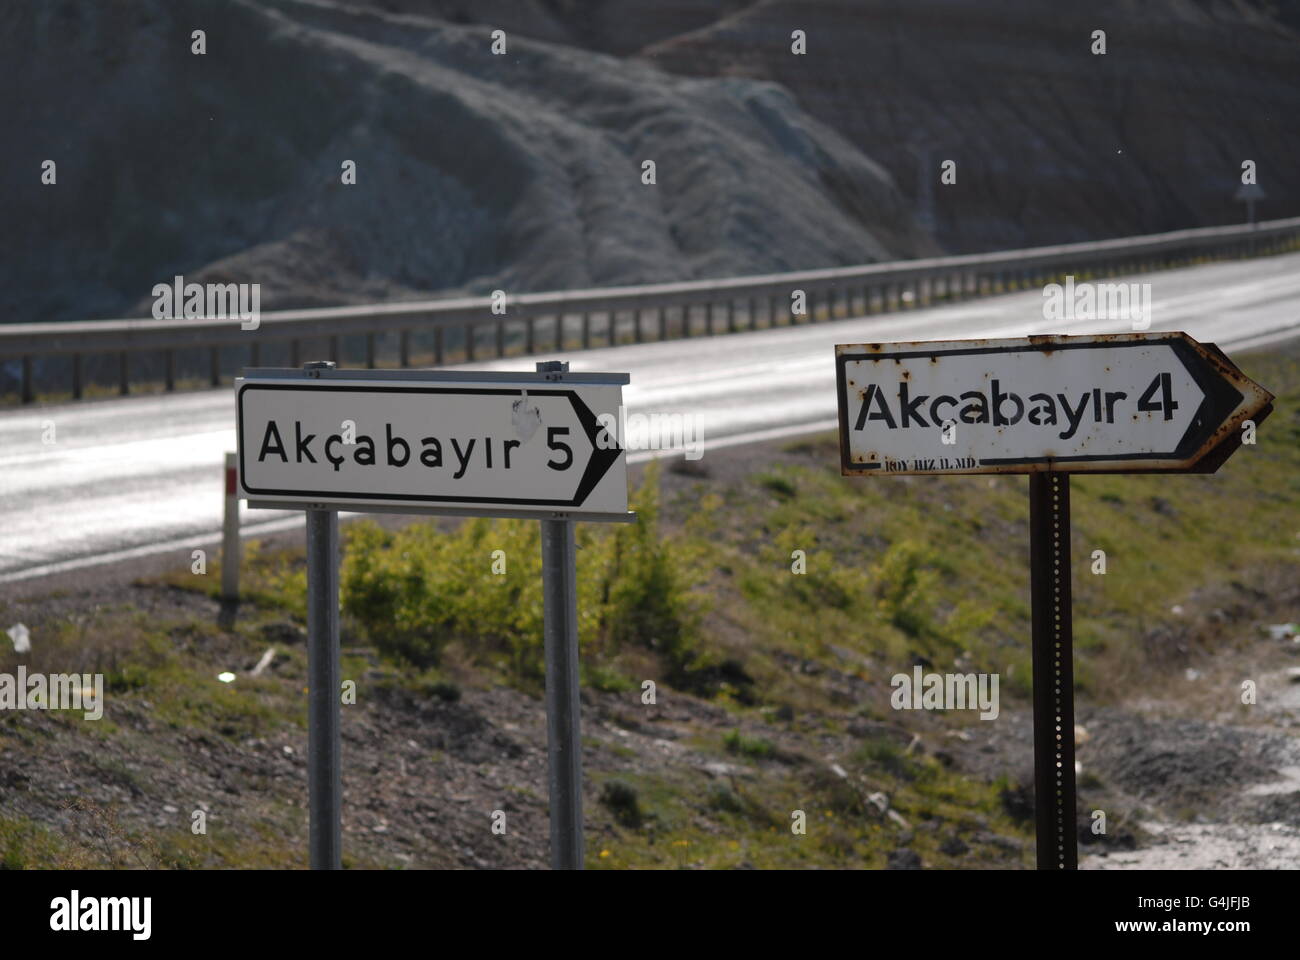 Sign indicates the Akcabayir, a country in the Nallihan-Ankara Stock Photo